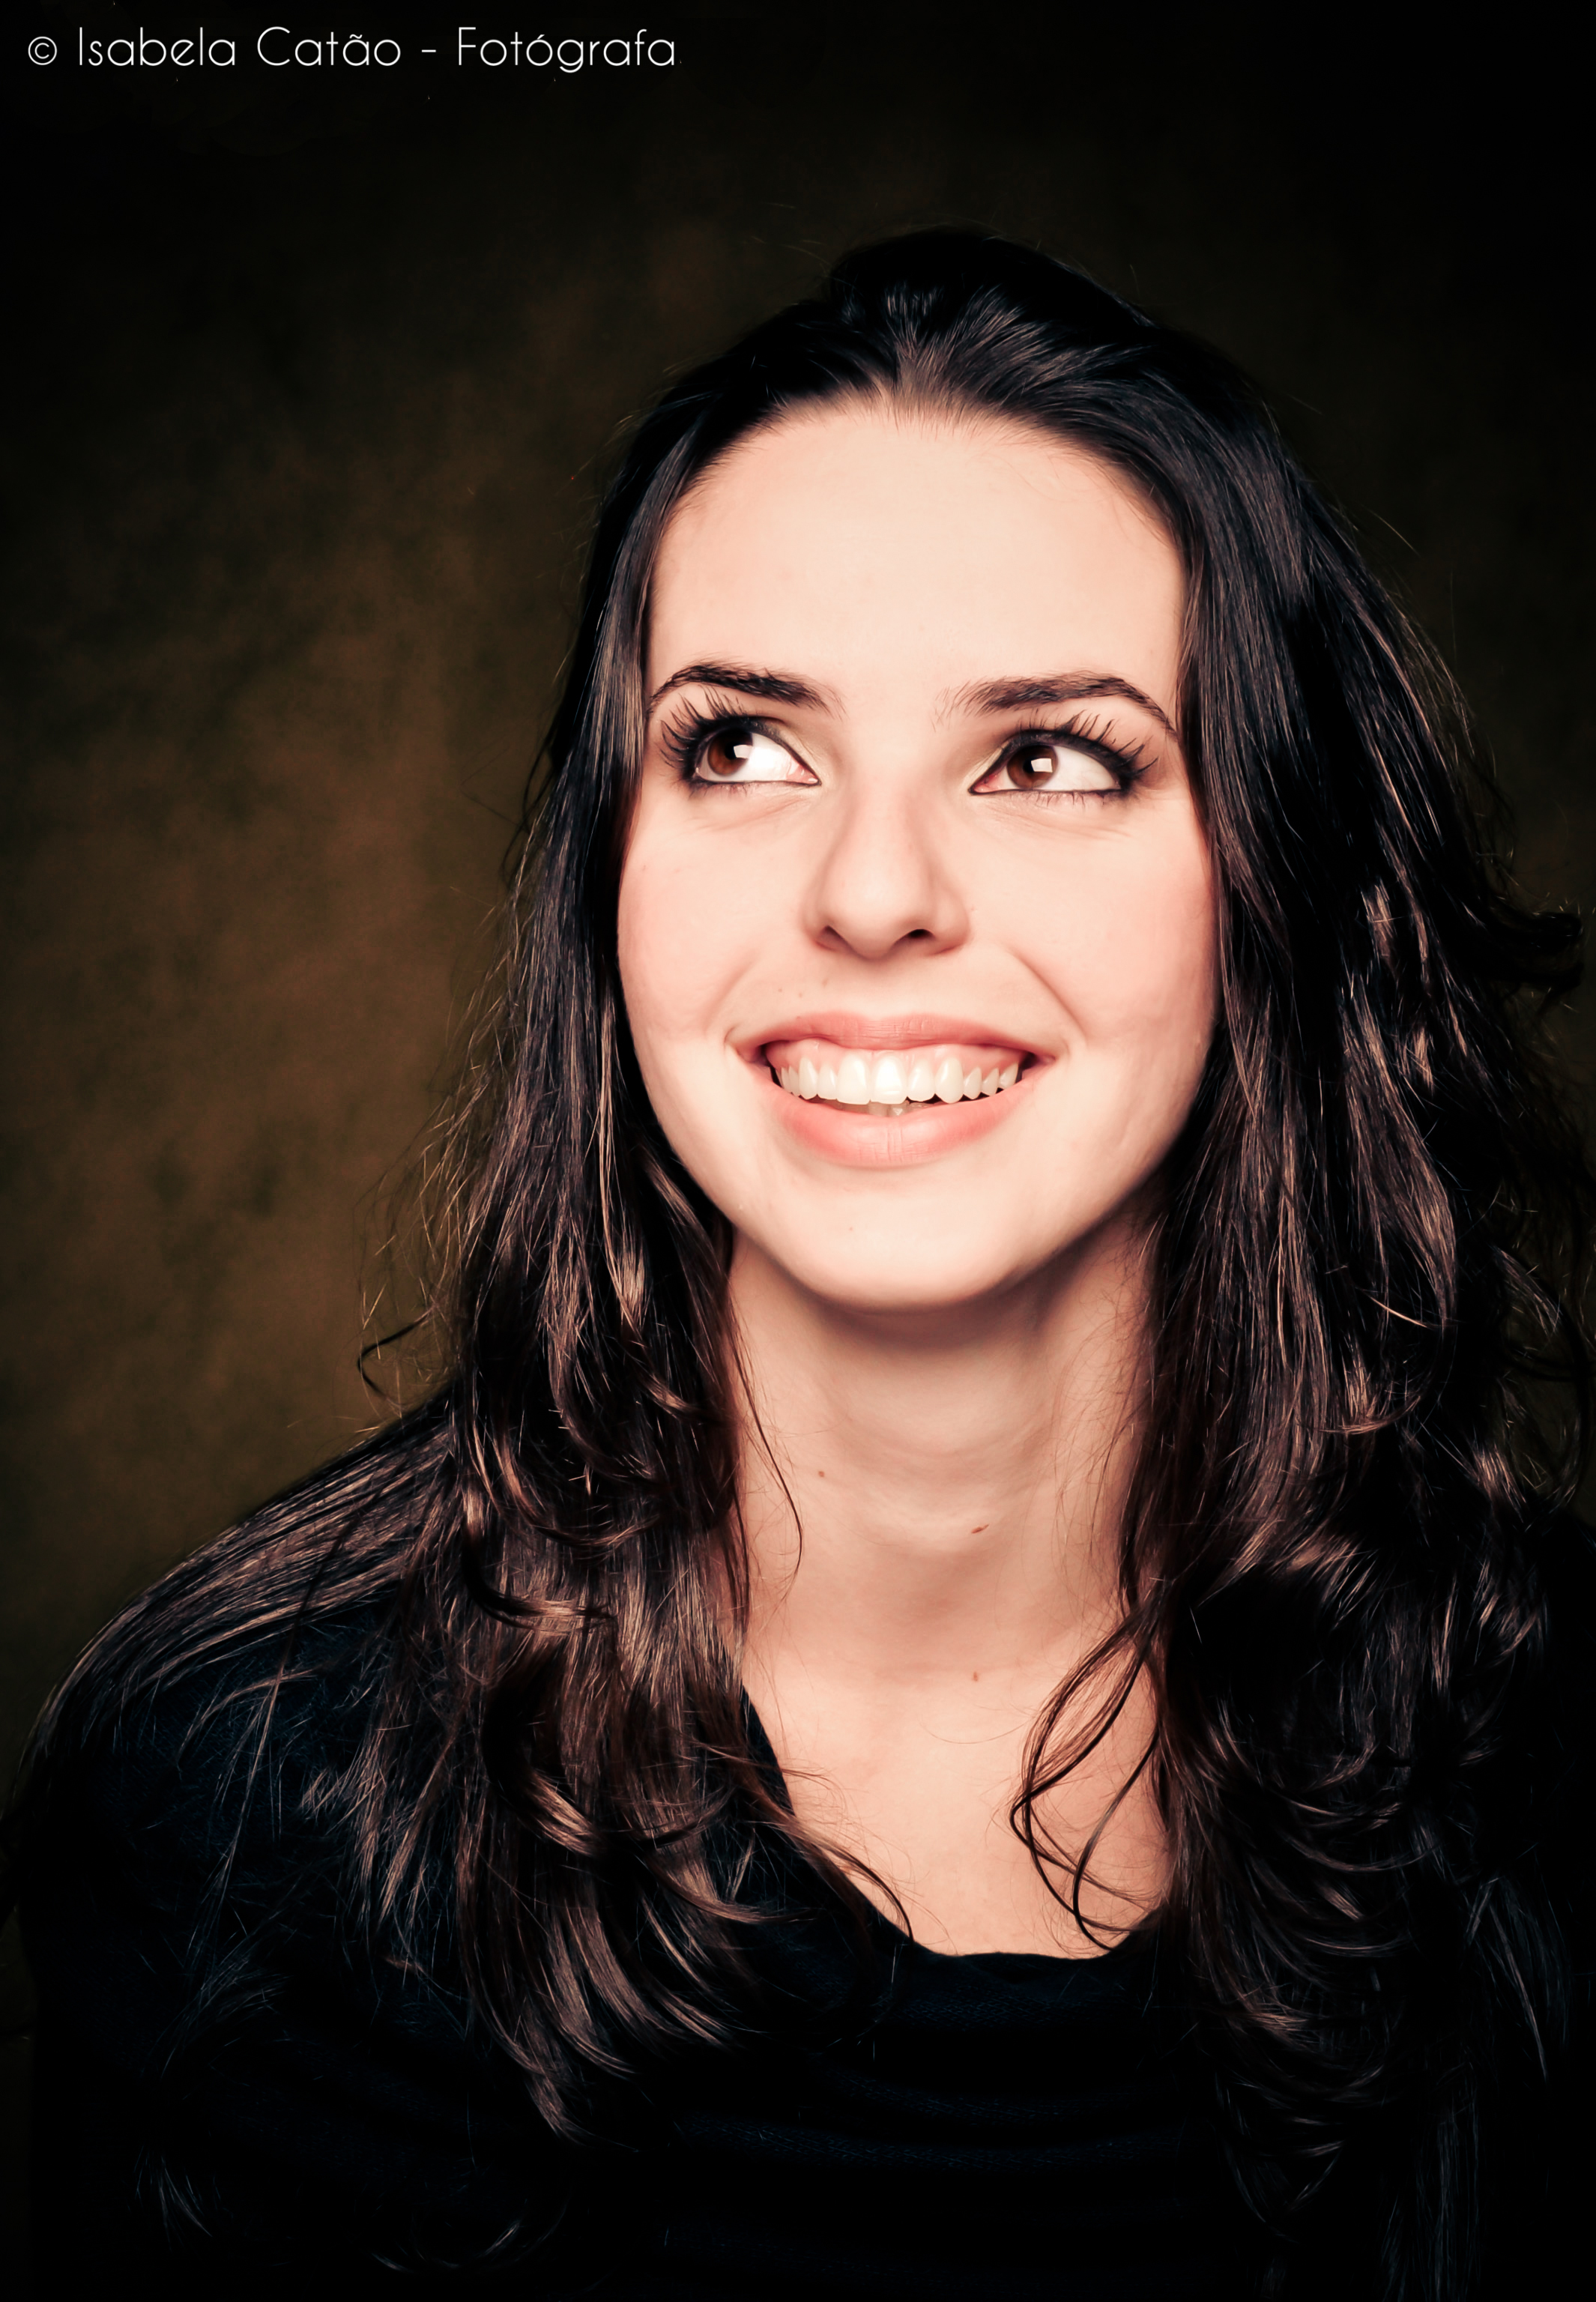 Foto da modelo Daniela Ferraz sorrindo (Foto: Isabela Catão)